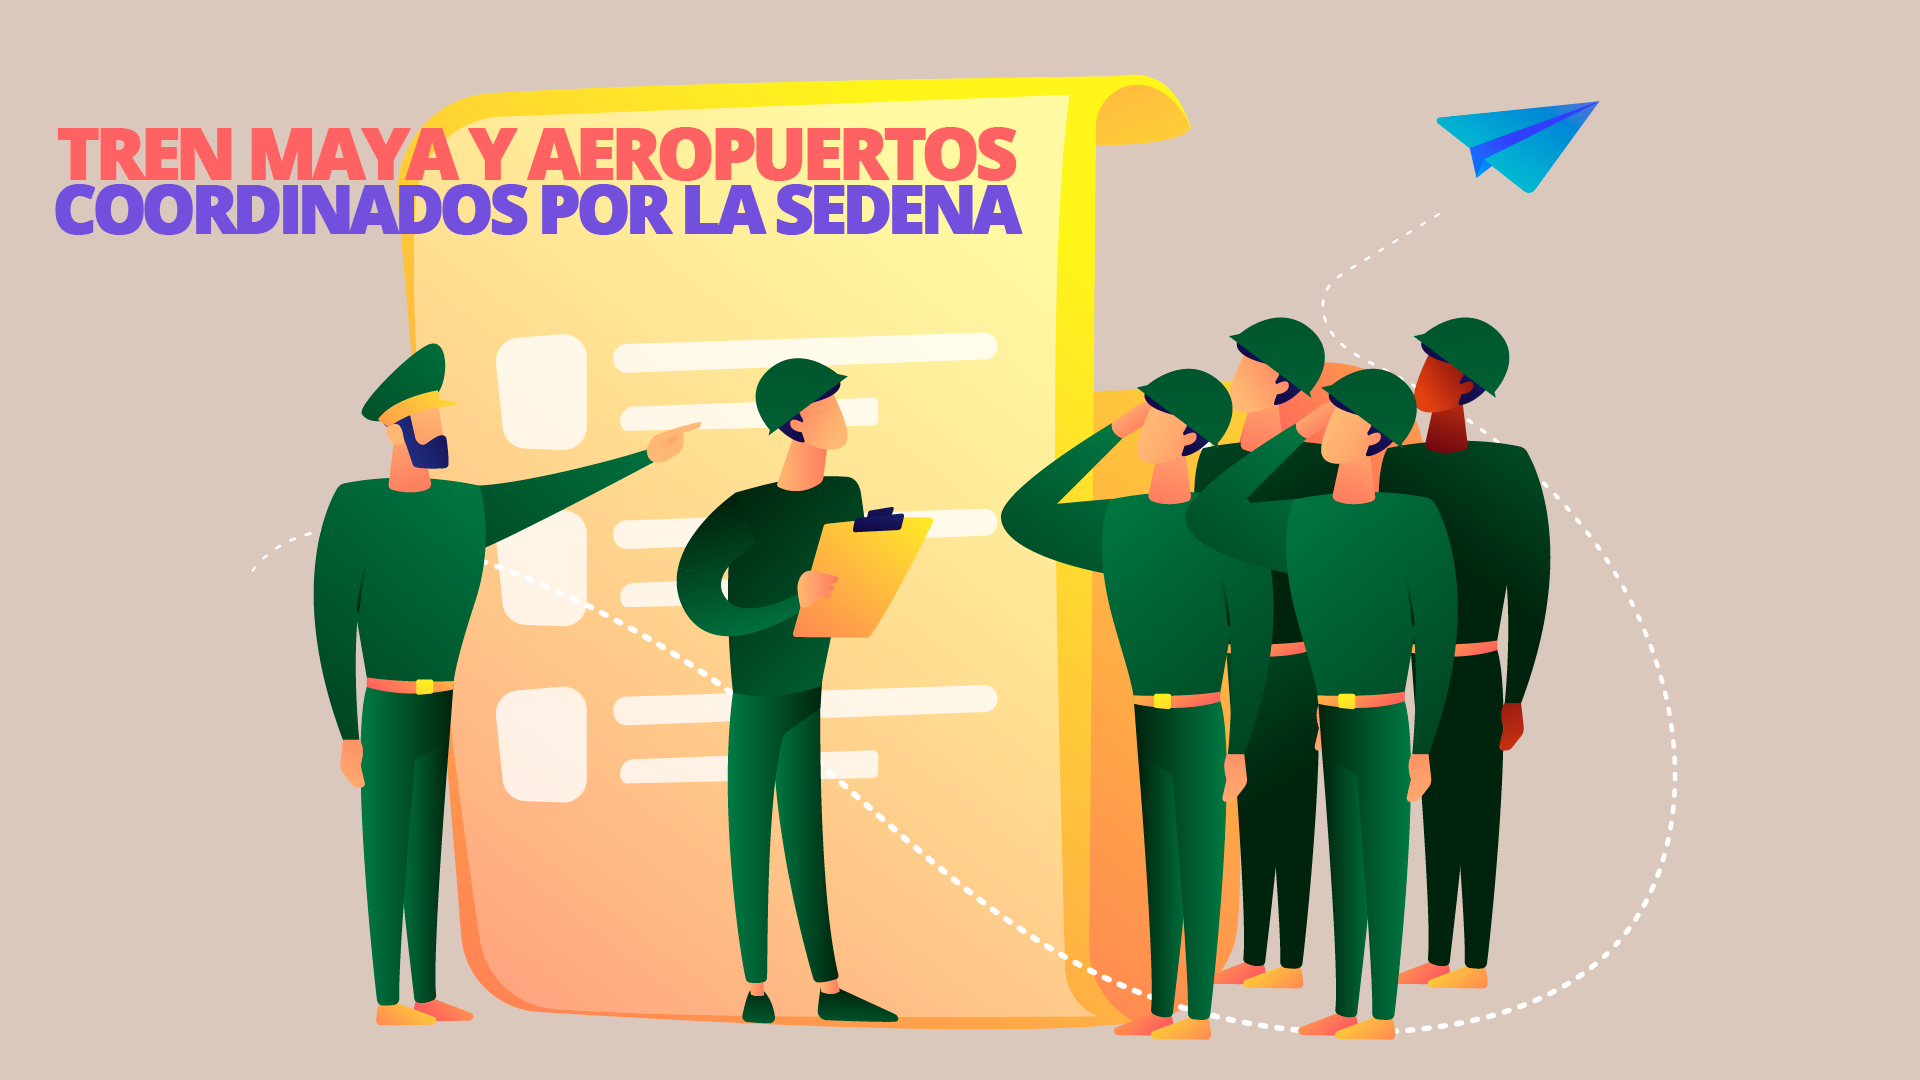 El valor de la infraestructura coordinada por SEDENA en el Grupo aeroportuario, ferroviario y de servicios auxiliares Olmeca-Maya-Mexica se estima en 305,677 millones de pesos